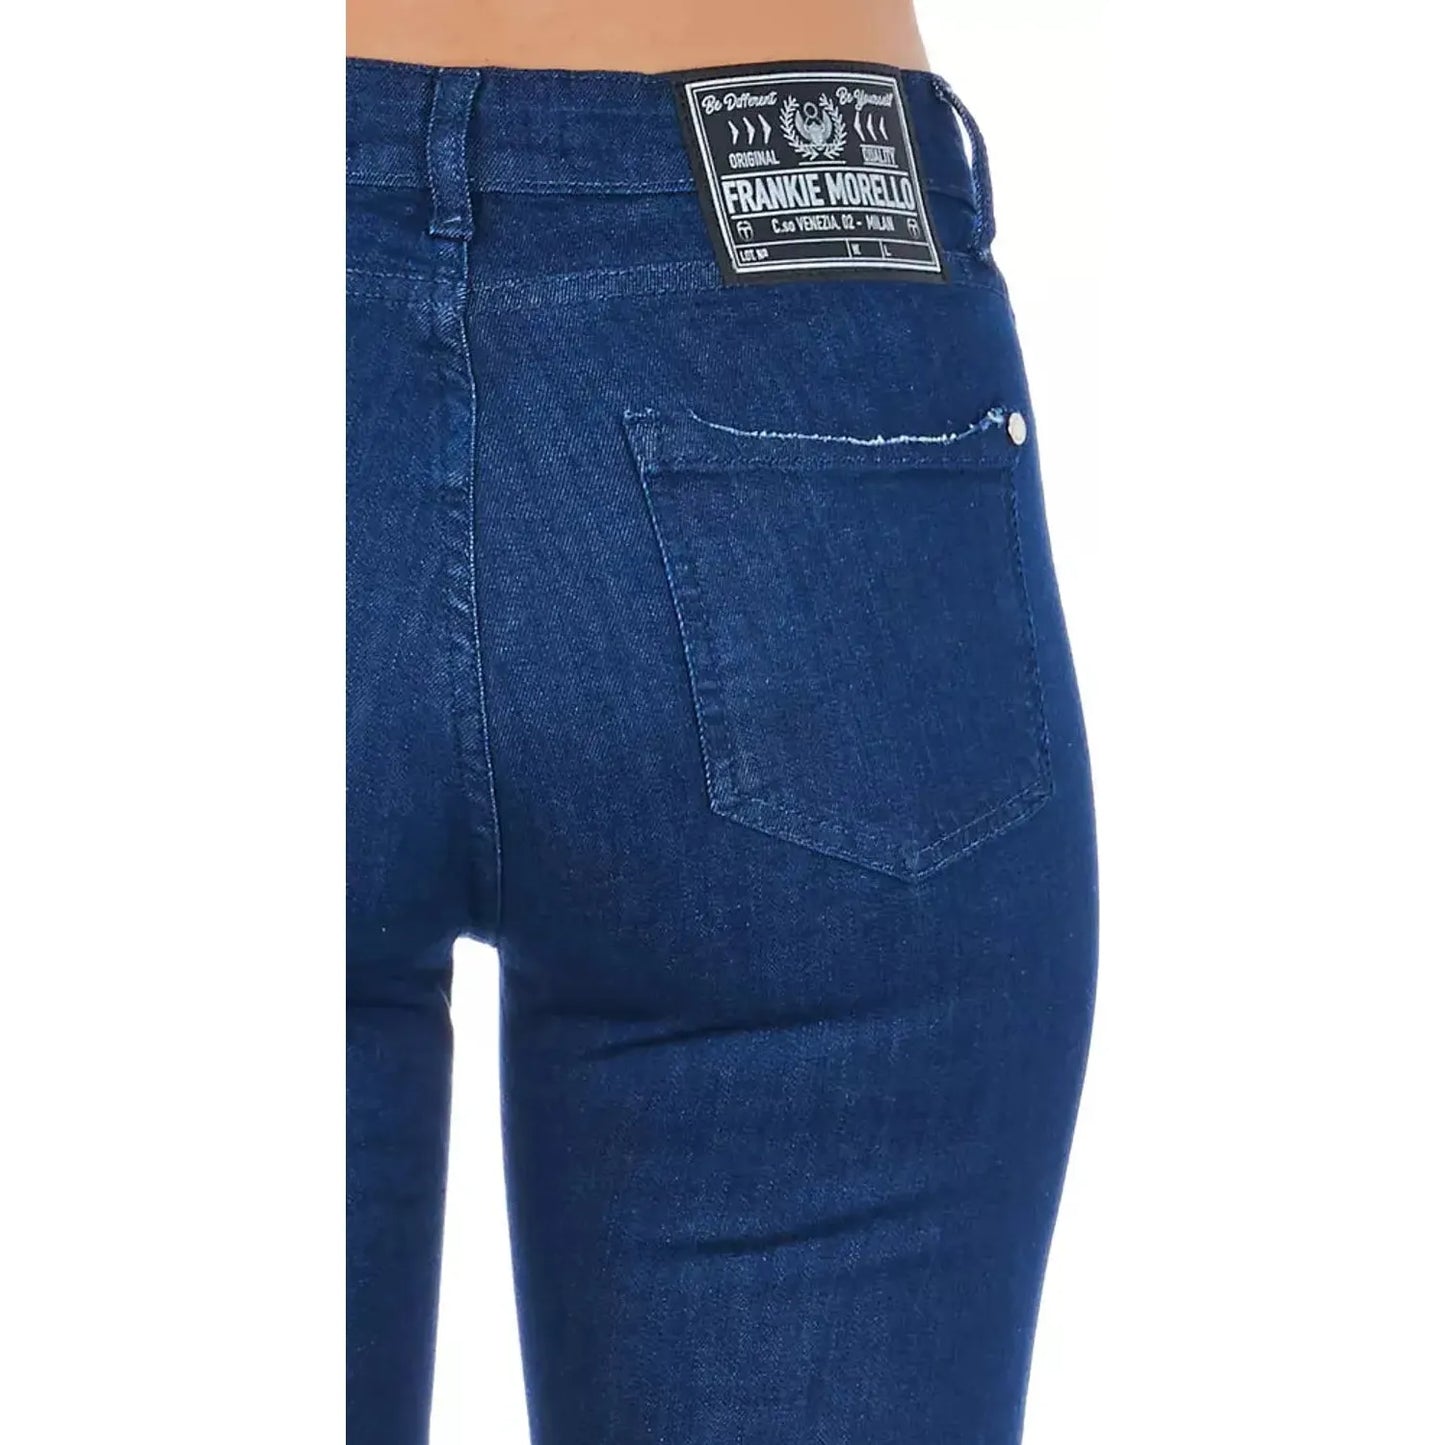 Frankie Morello Chic Multi-Pocket Skinny Denim blue-cotton-jeans-pant-50 product-21769-1060119413-22-1ea4d75c-9d0.webp